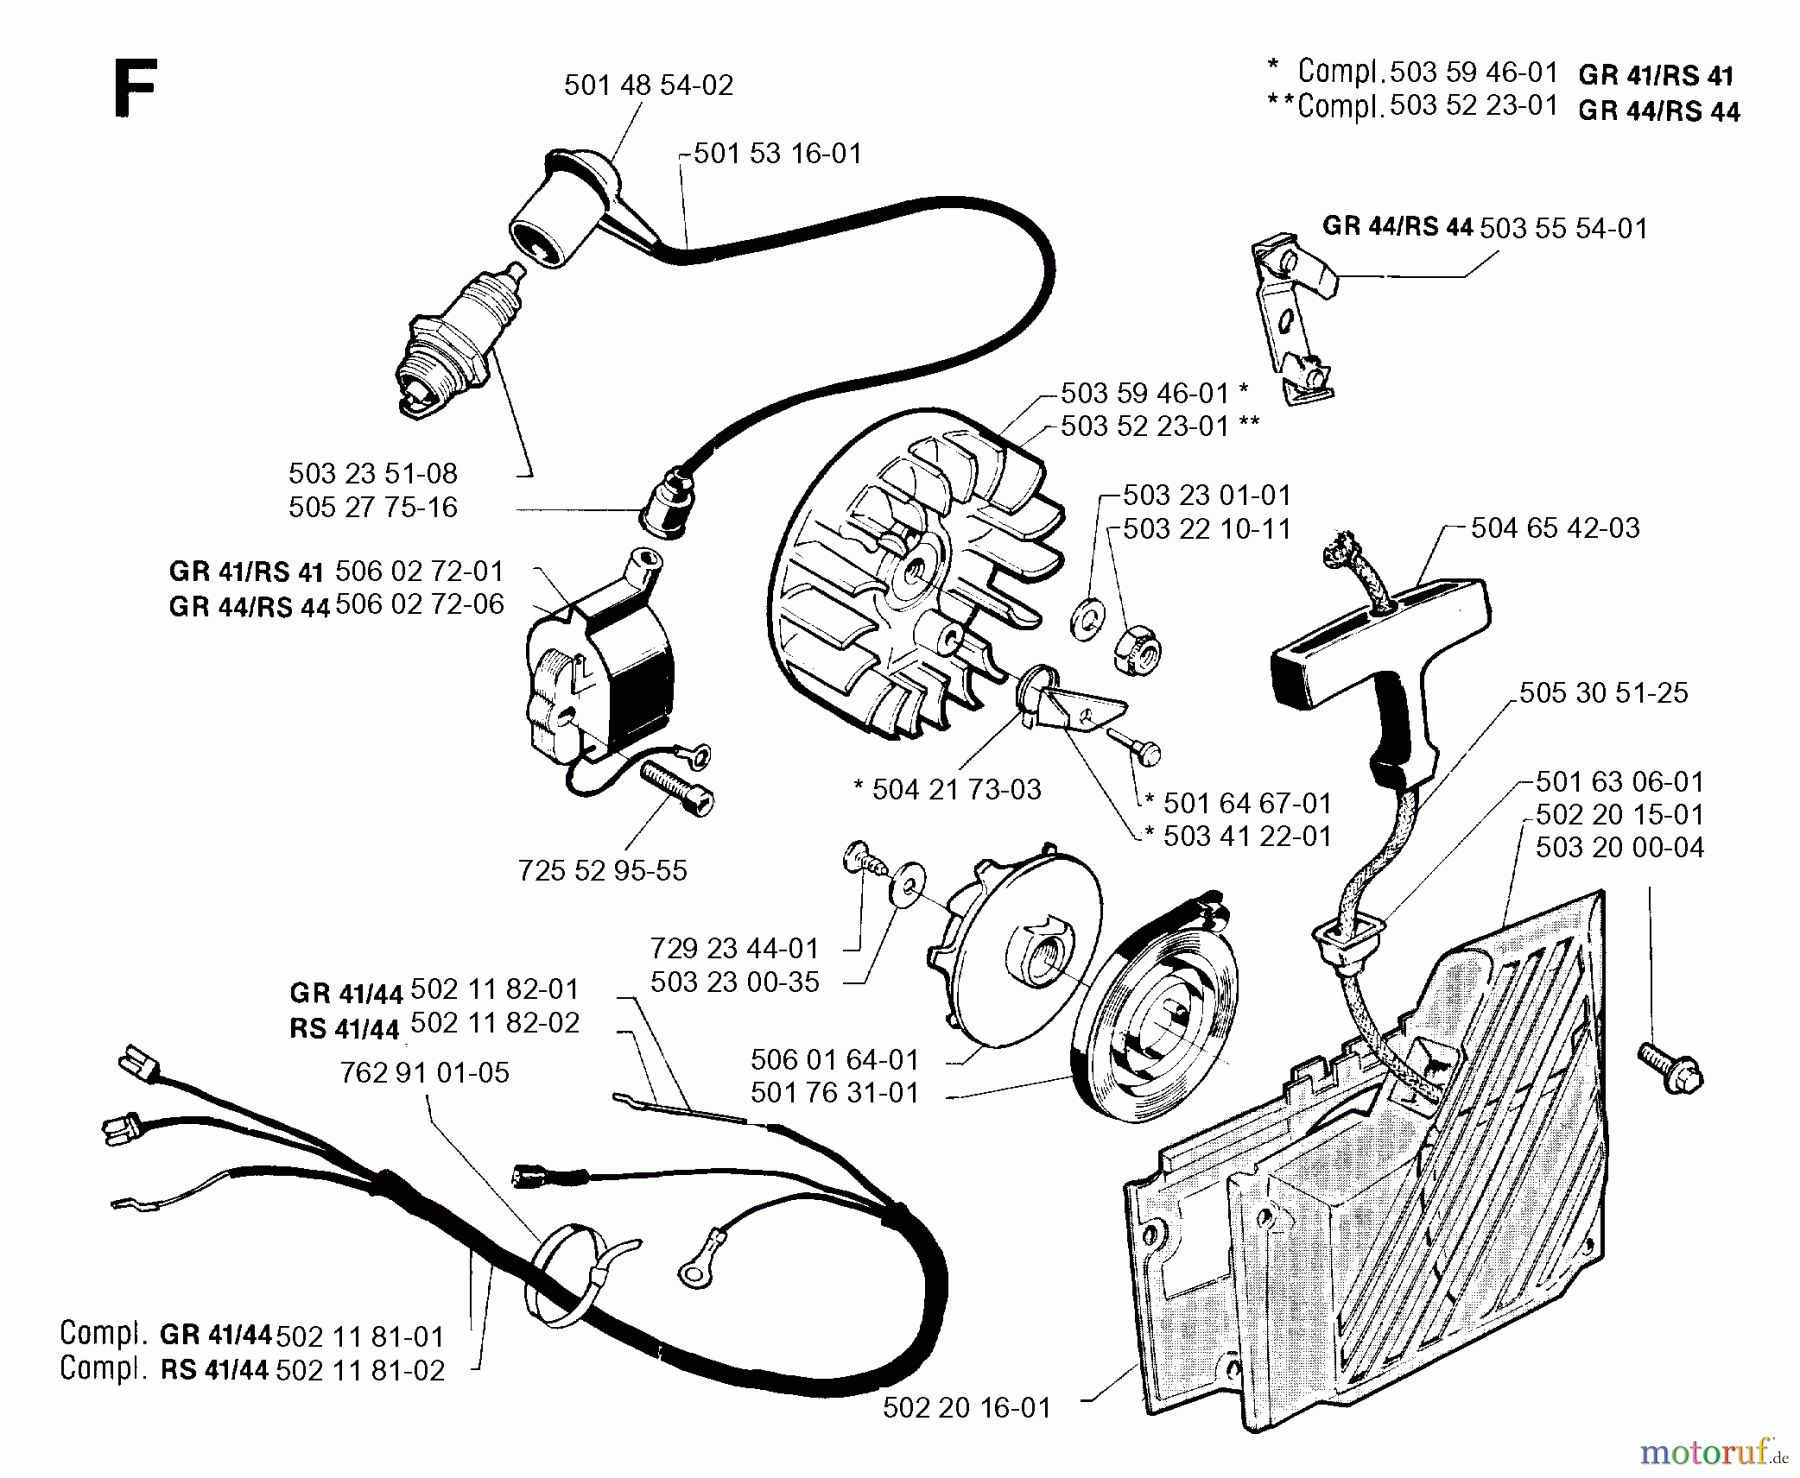  Jonsered Motorsensen, Trimmer GR44 - Jonsered String/Brush Trimmer (1992-09) STARTER